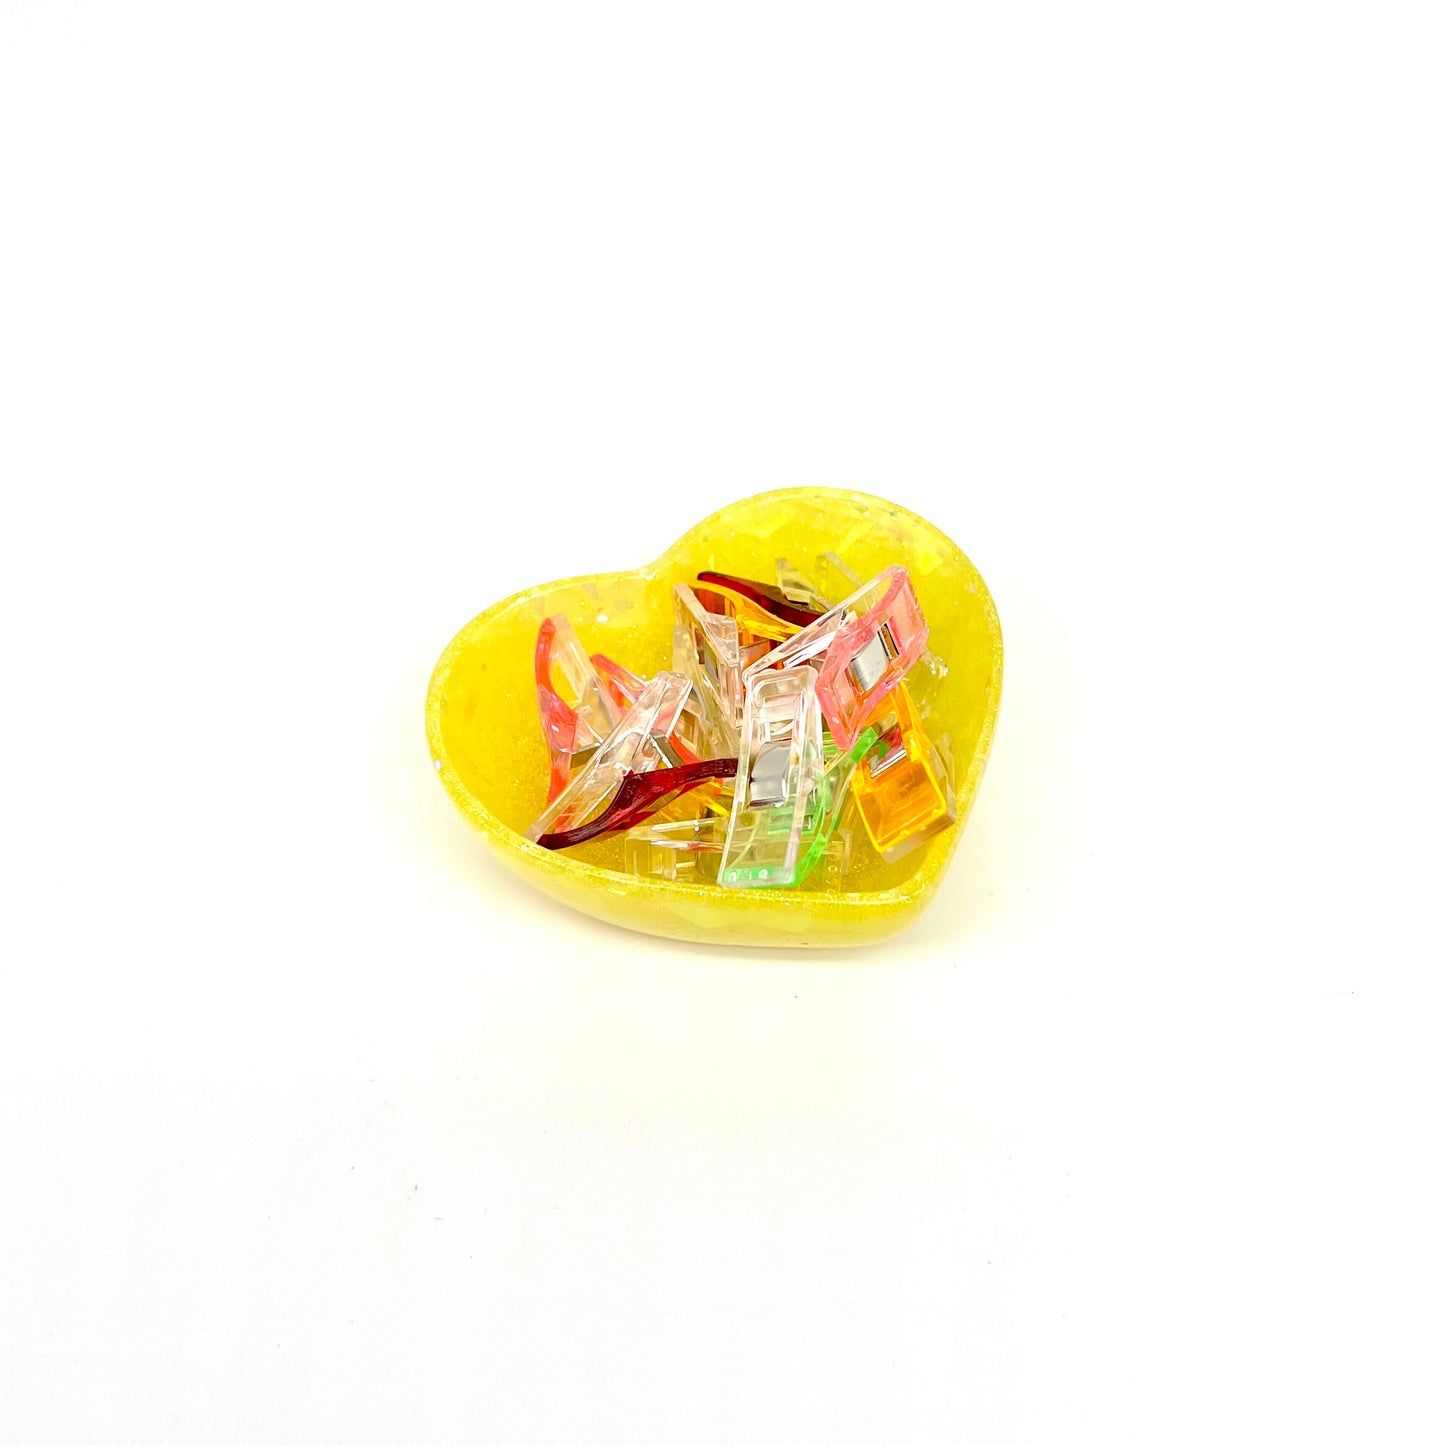 Heart Clip Tray (Yellow - Small)